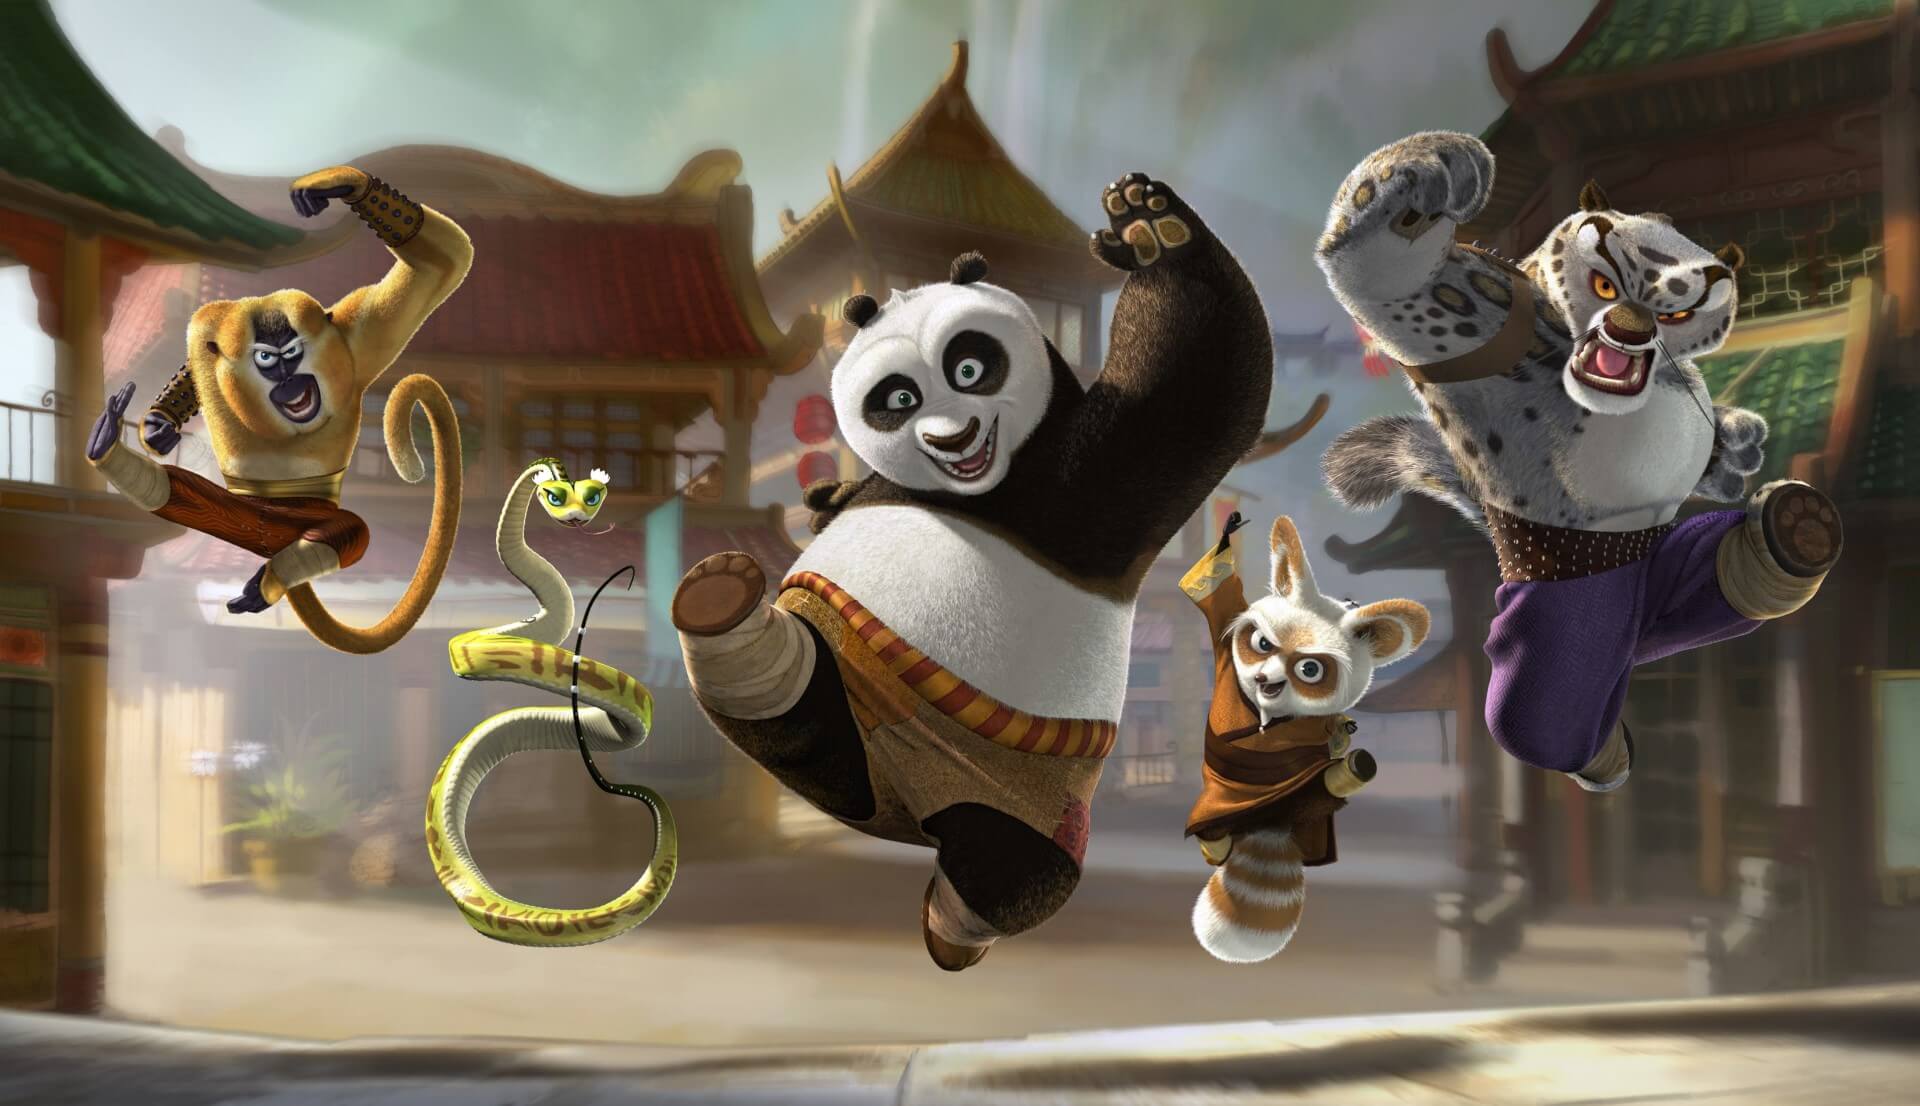 Kung fu panda: Gặp lại chú gấu trúc Po và hành trình của anh ta trong việc học Kung Fu, gặp gỡ và chiến đấu cùng các đồng đội . Với Chú gấu trúc dễ thương và các nhân vật khác, giúp bạn tận hưởng những khoảnh khắc thú vị trong thế giới của Kung Fu Panda. Hãy xem hình ảnh để cảm nhận trọn vẹn hơn.